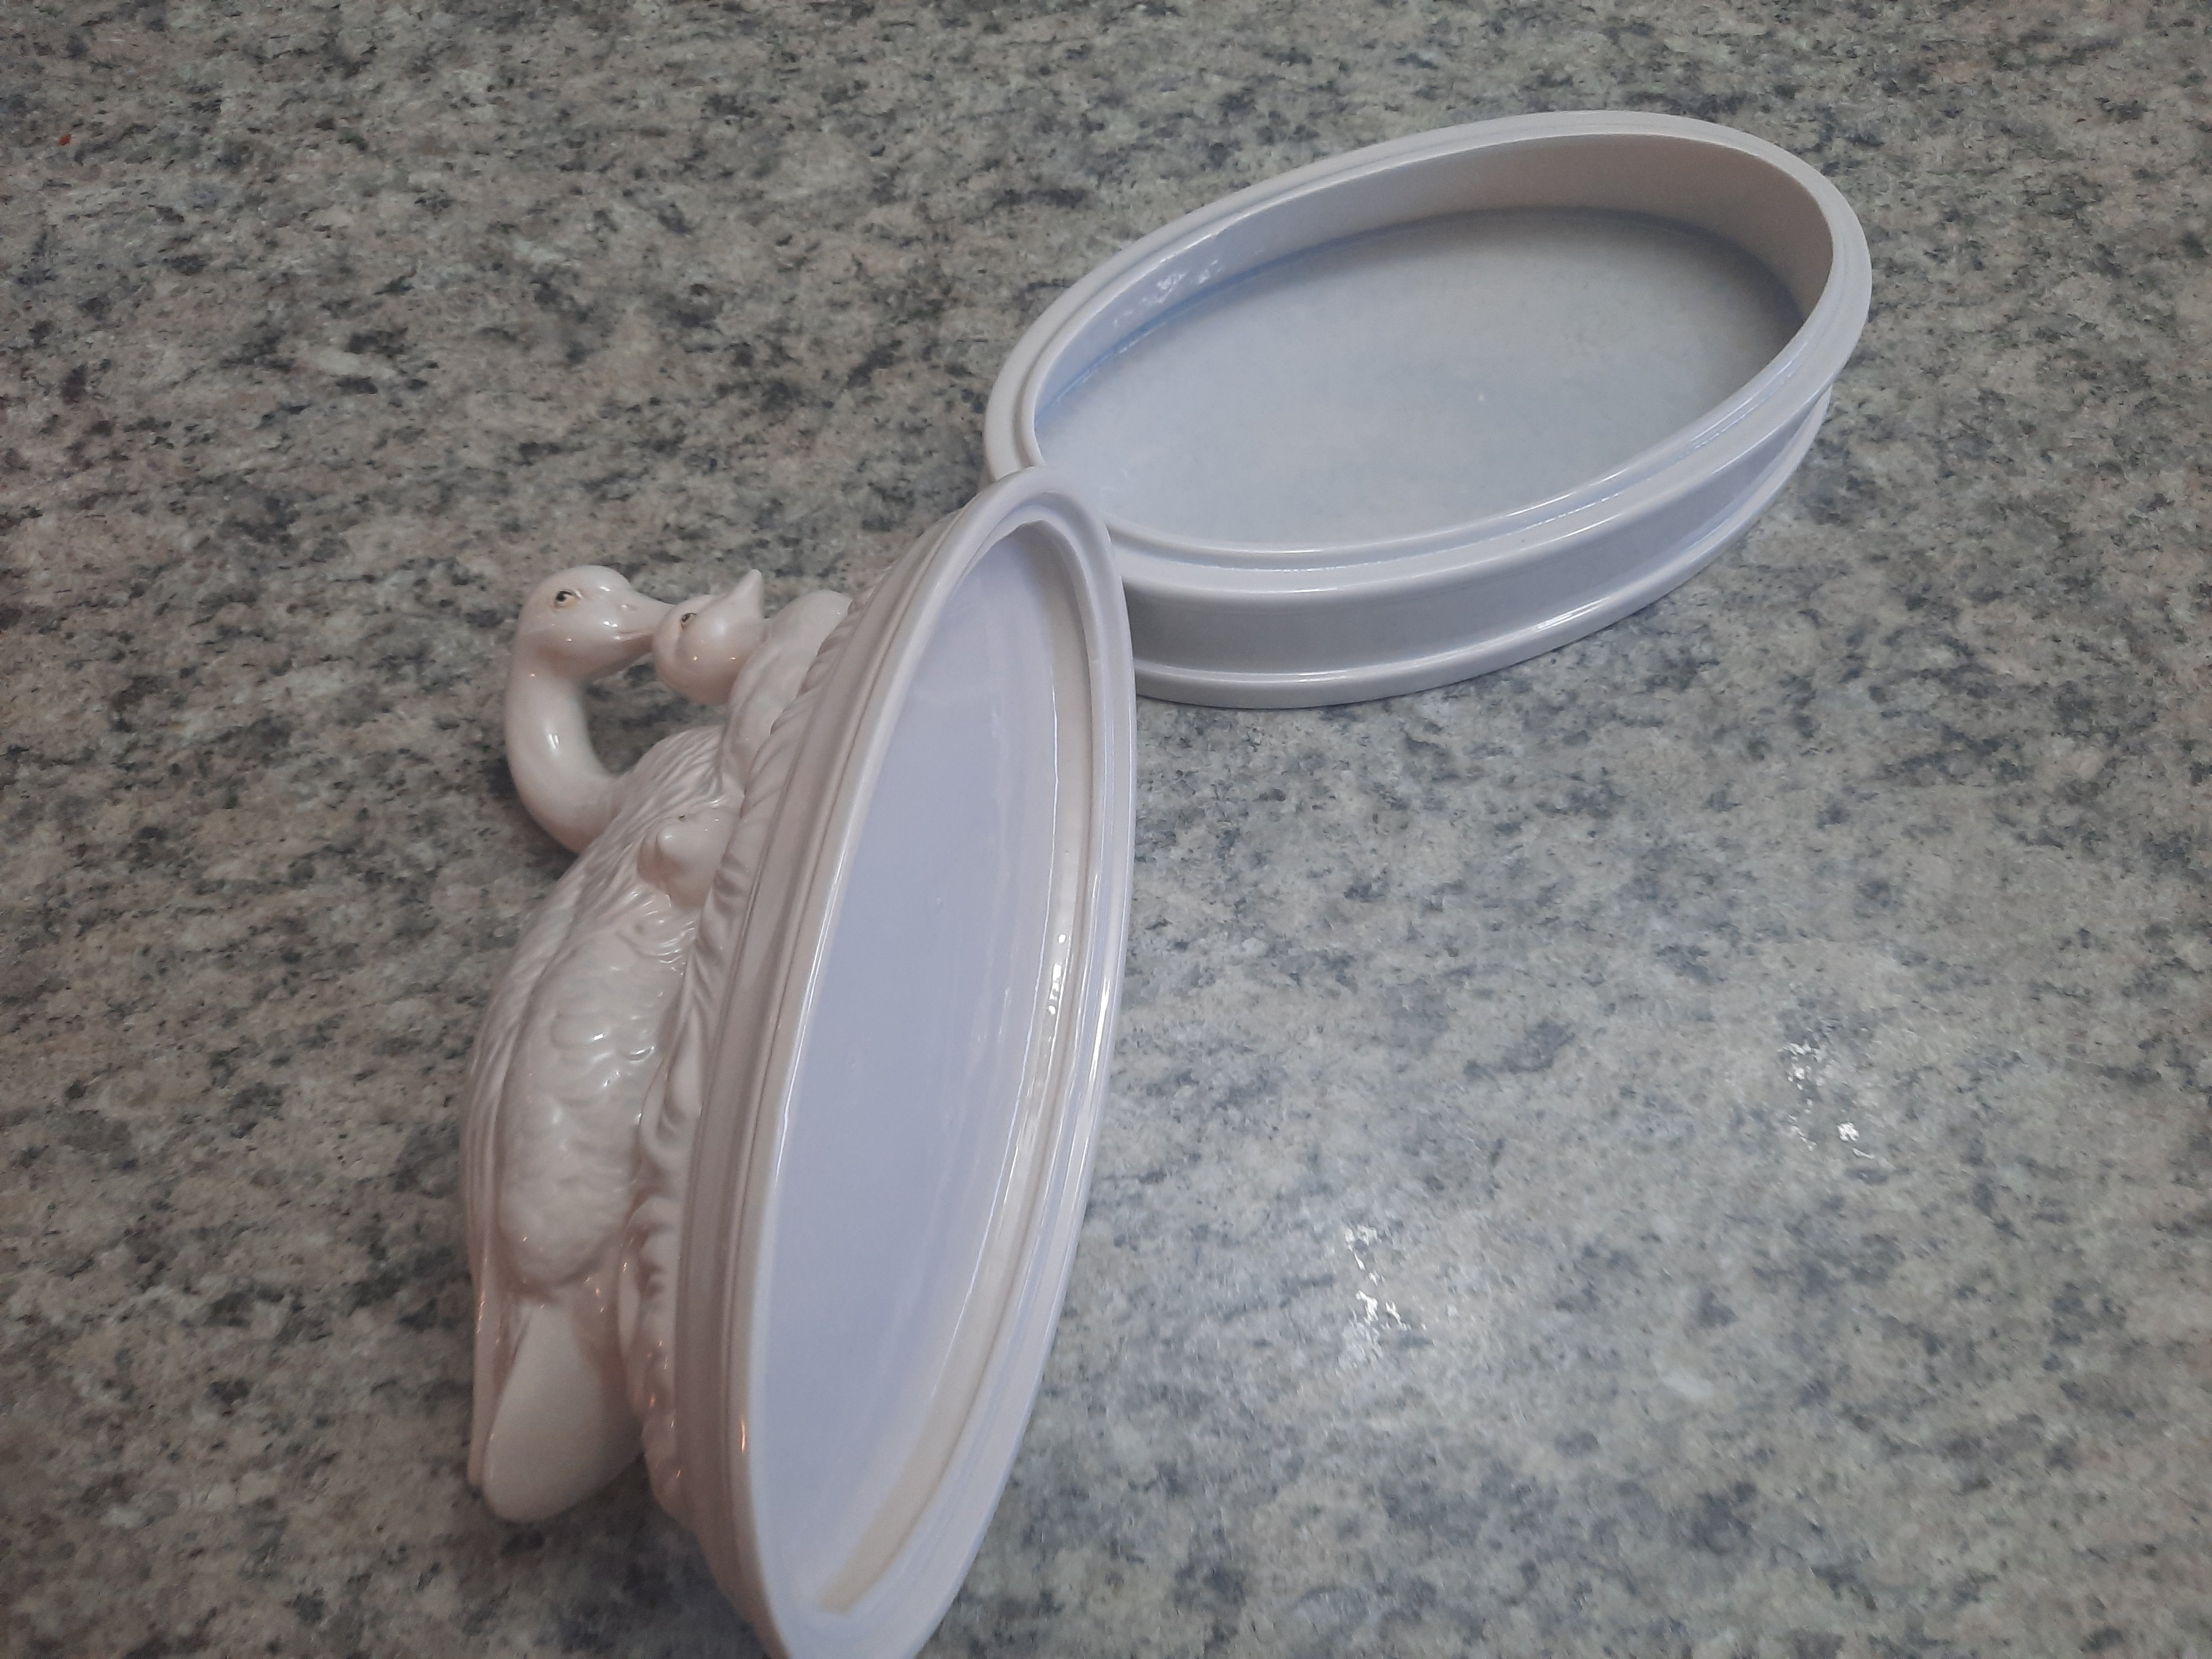 Goose & Goosling Ceramic Dish